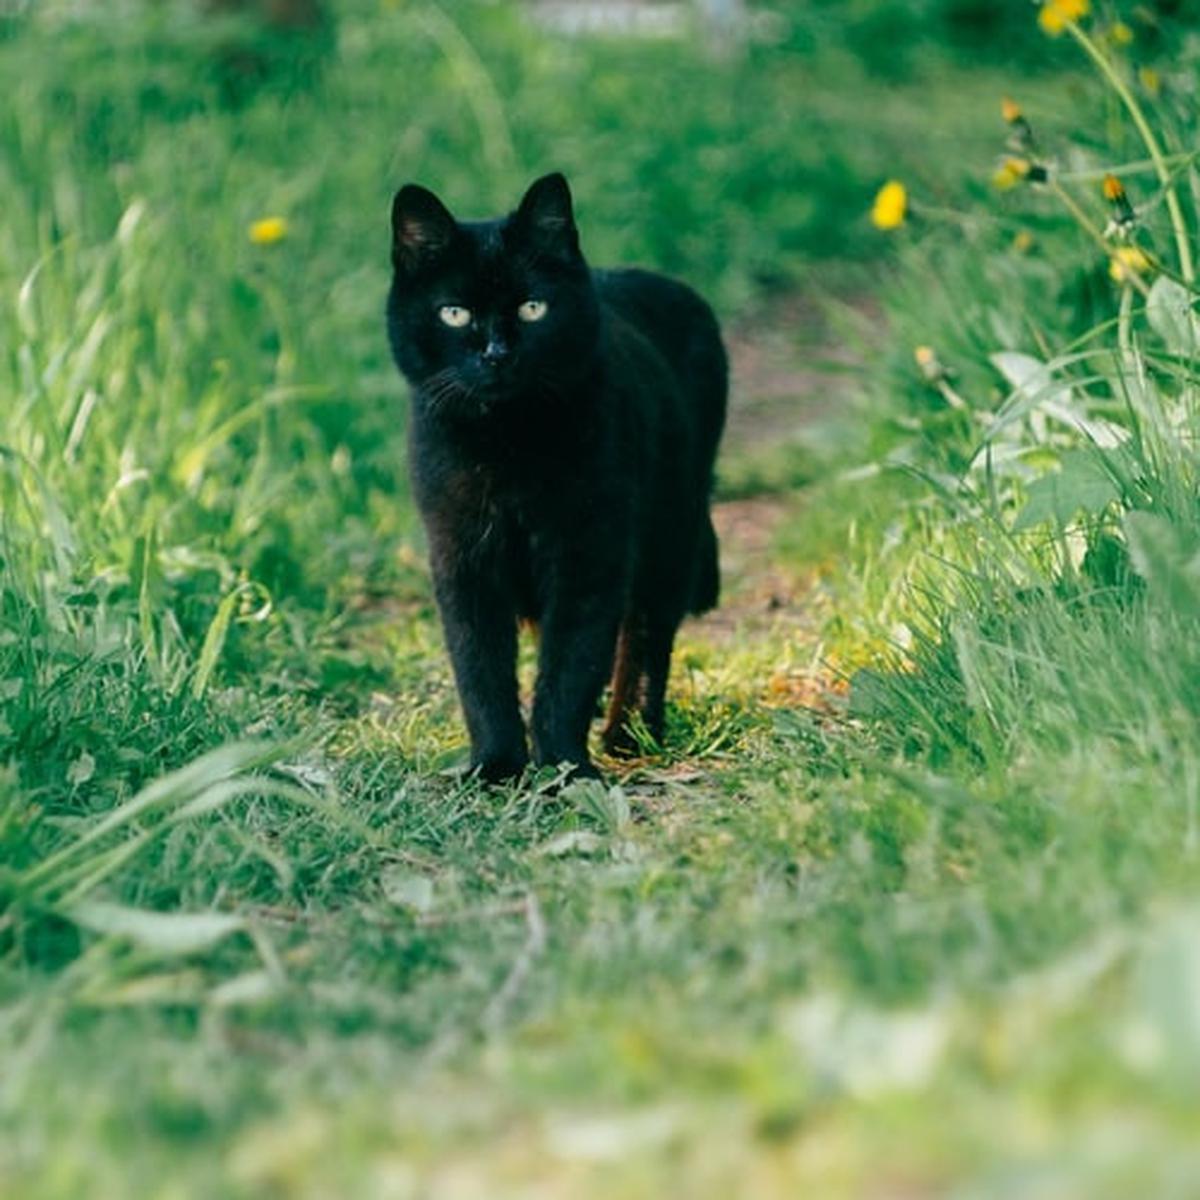 kucing hitam muka manusia